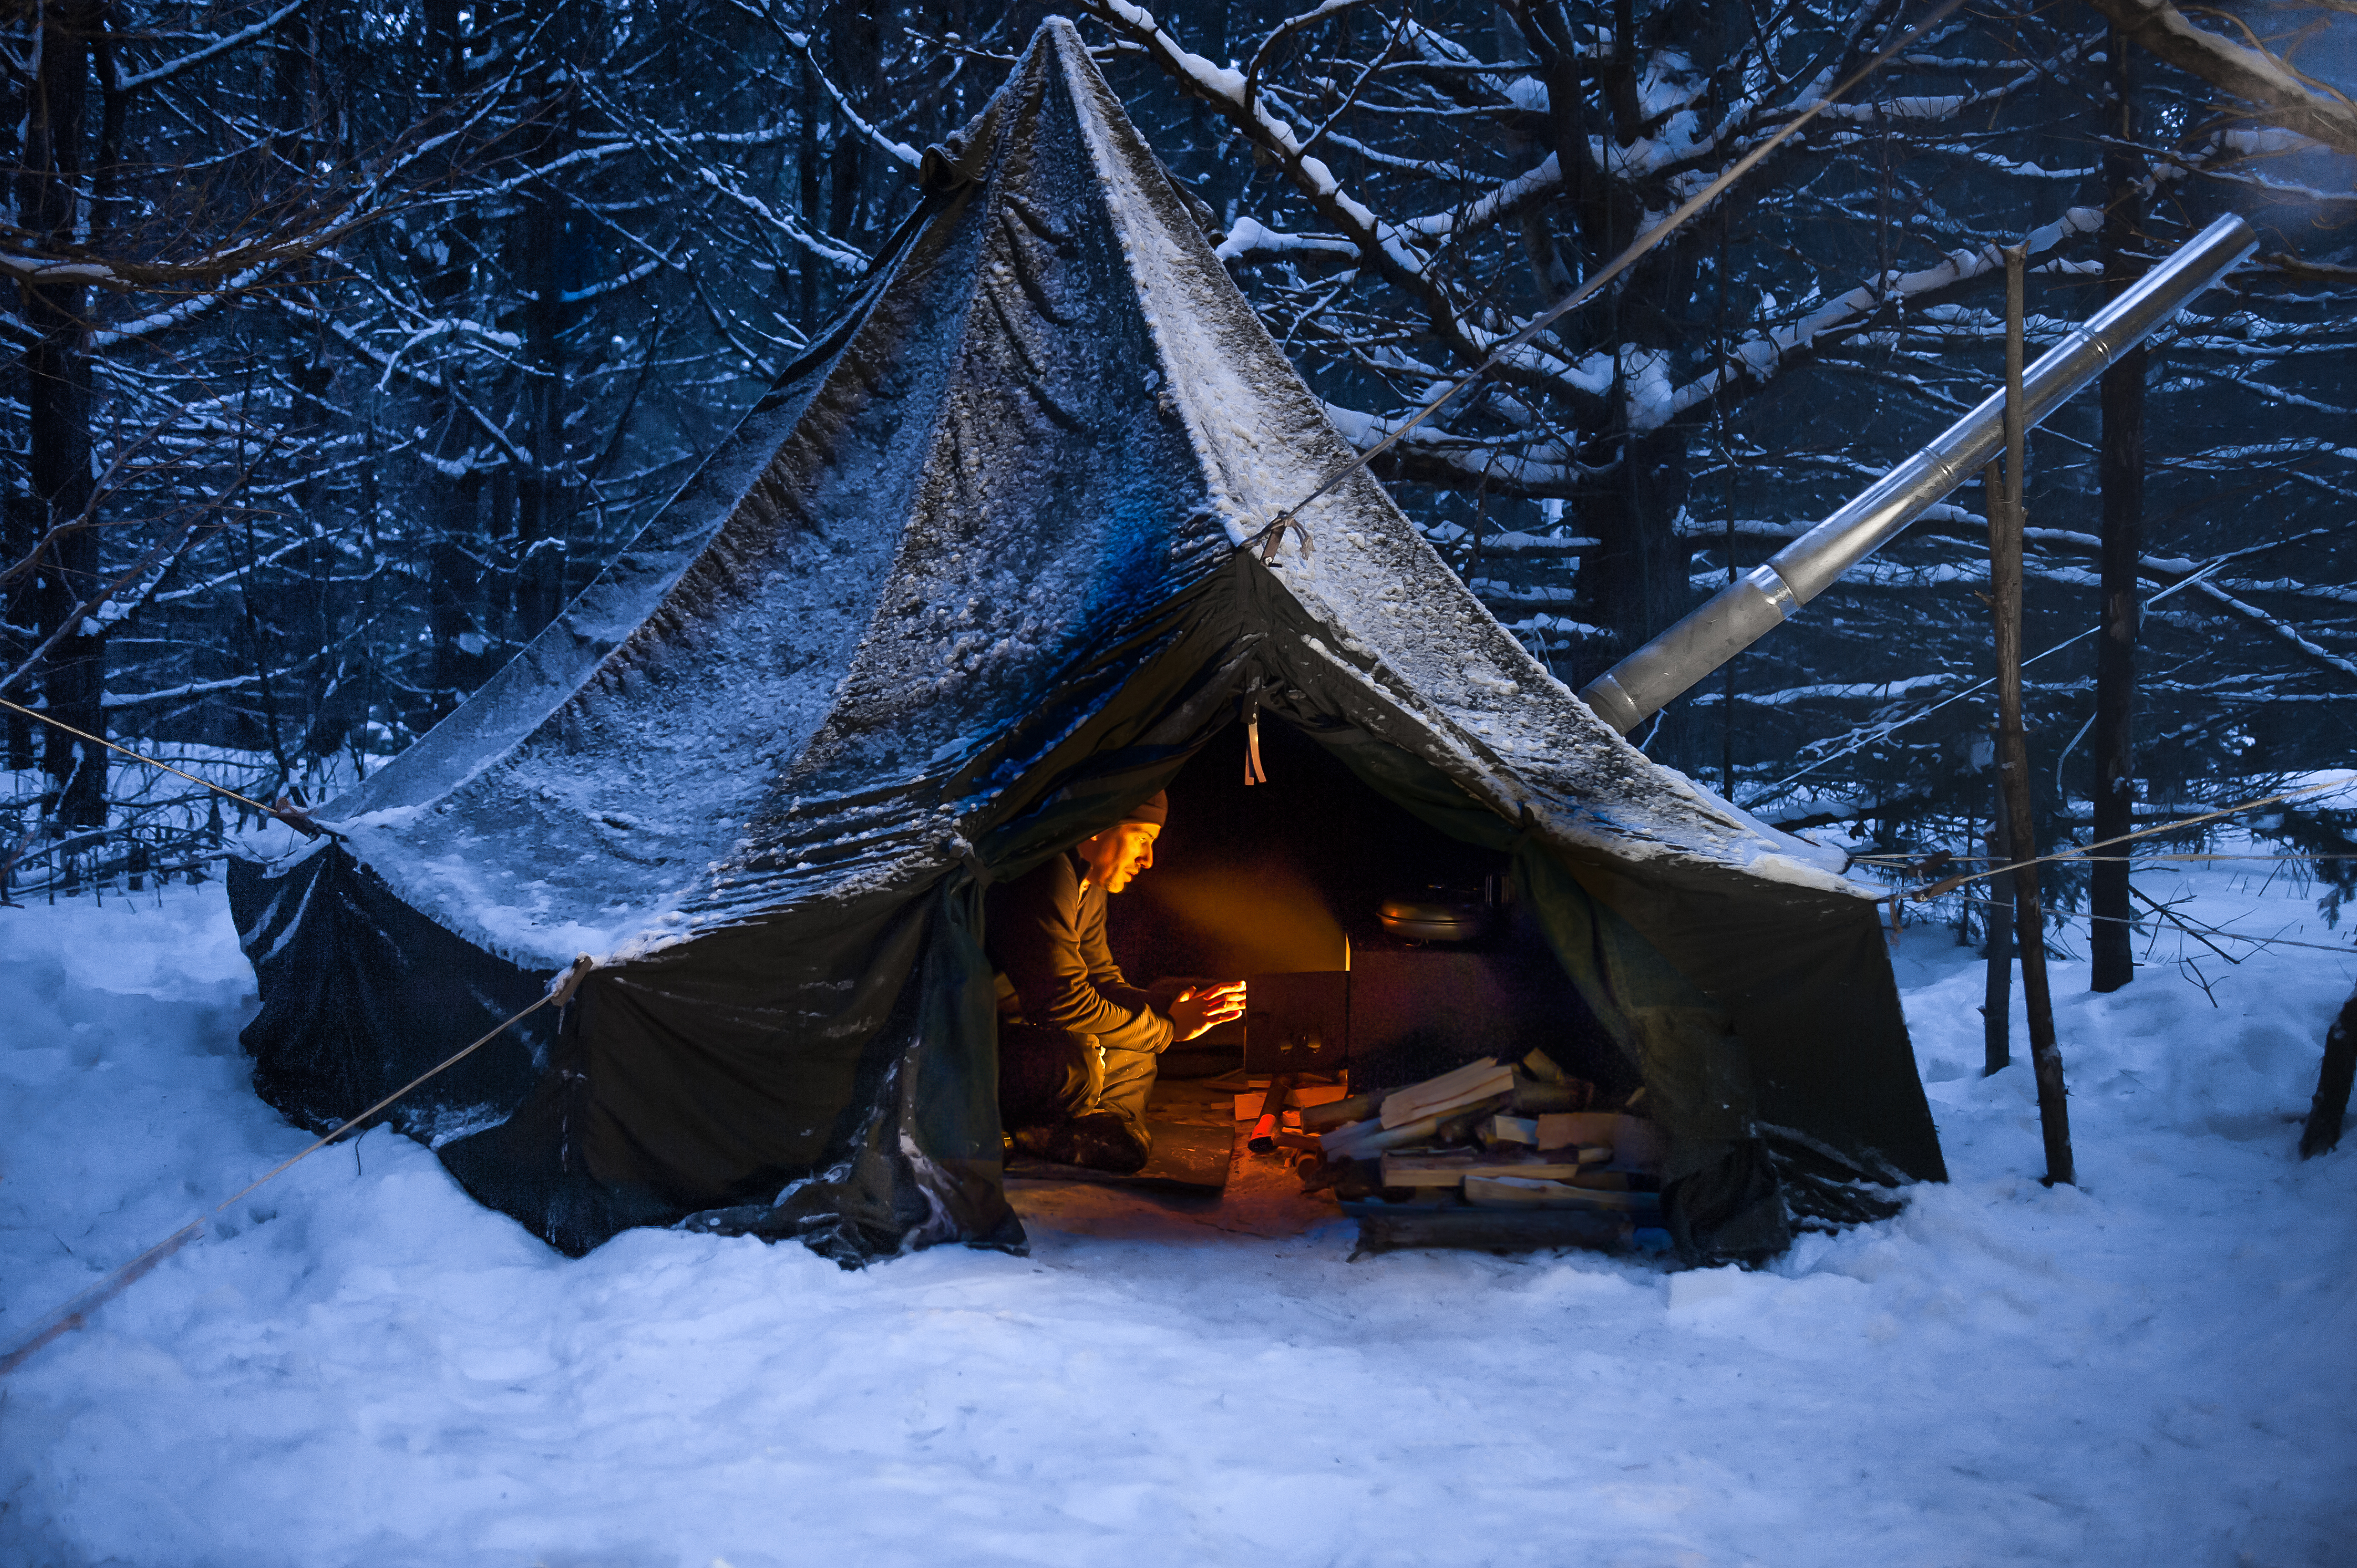 Зима близко но в палатке короля севера всегда горячо